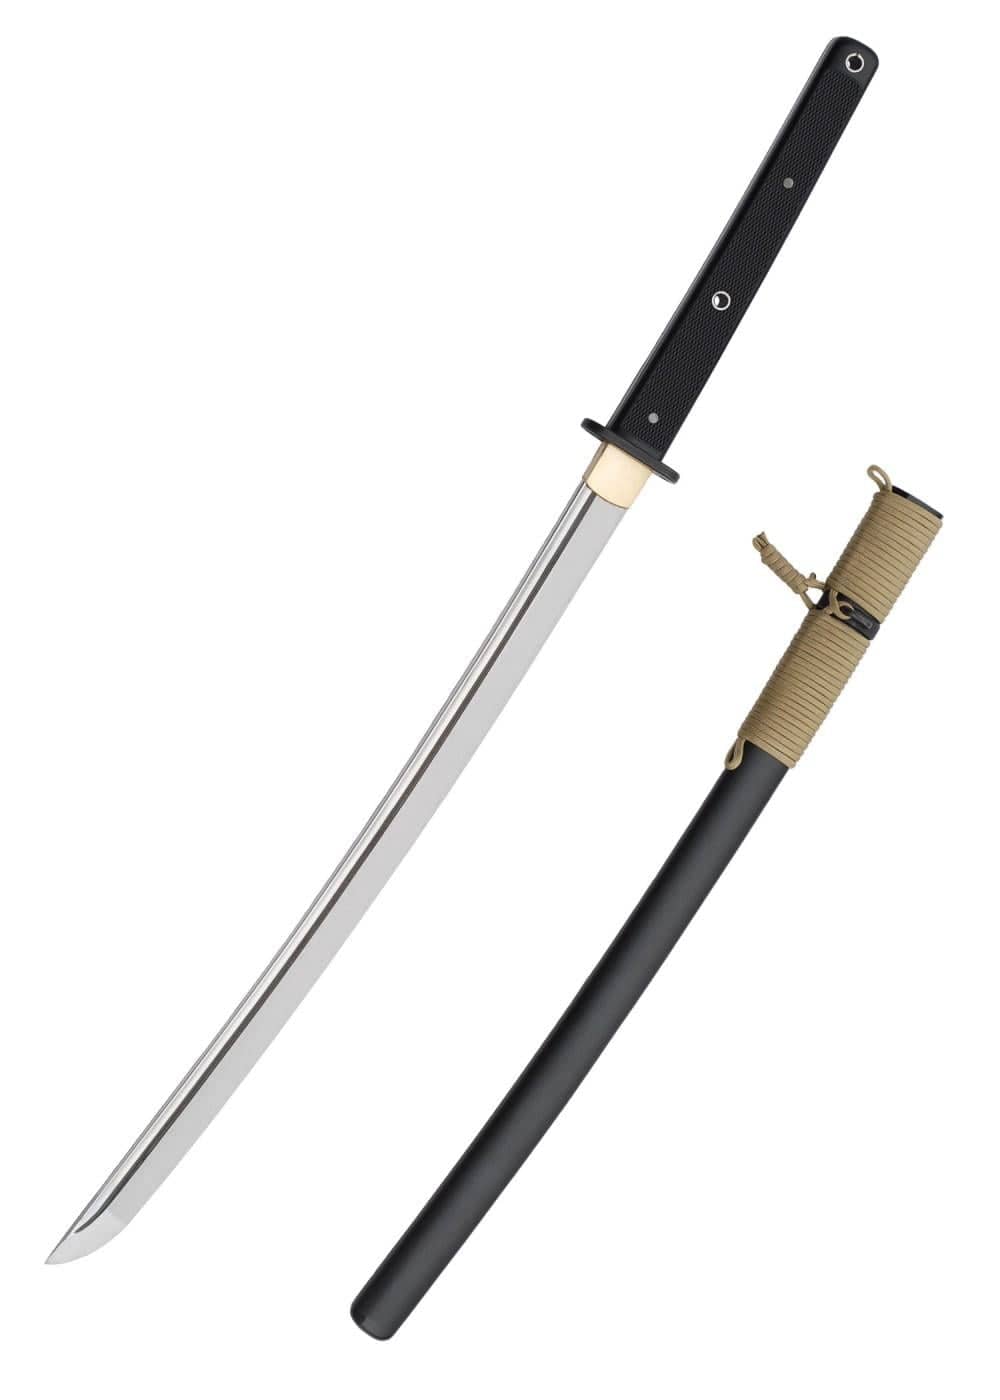 SH2432 Wakizashi tactico - Espadas y Más